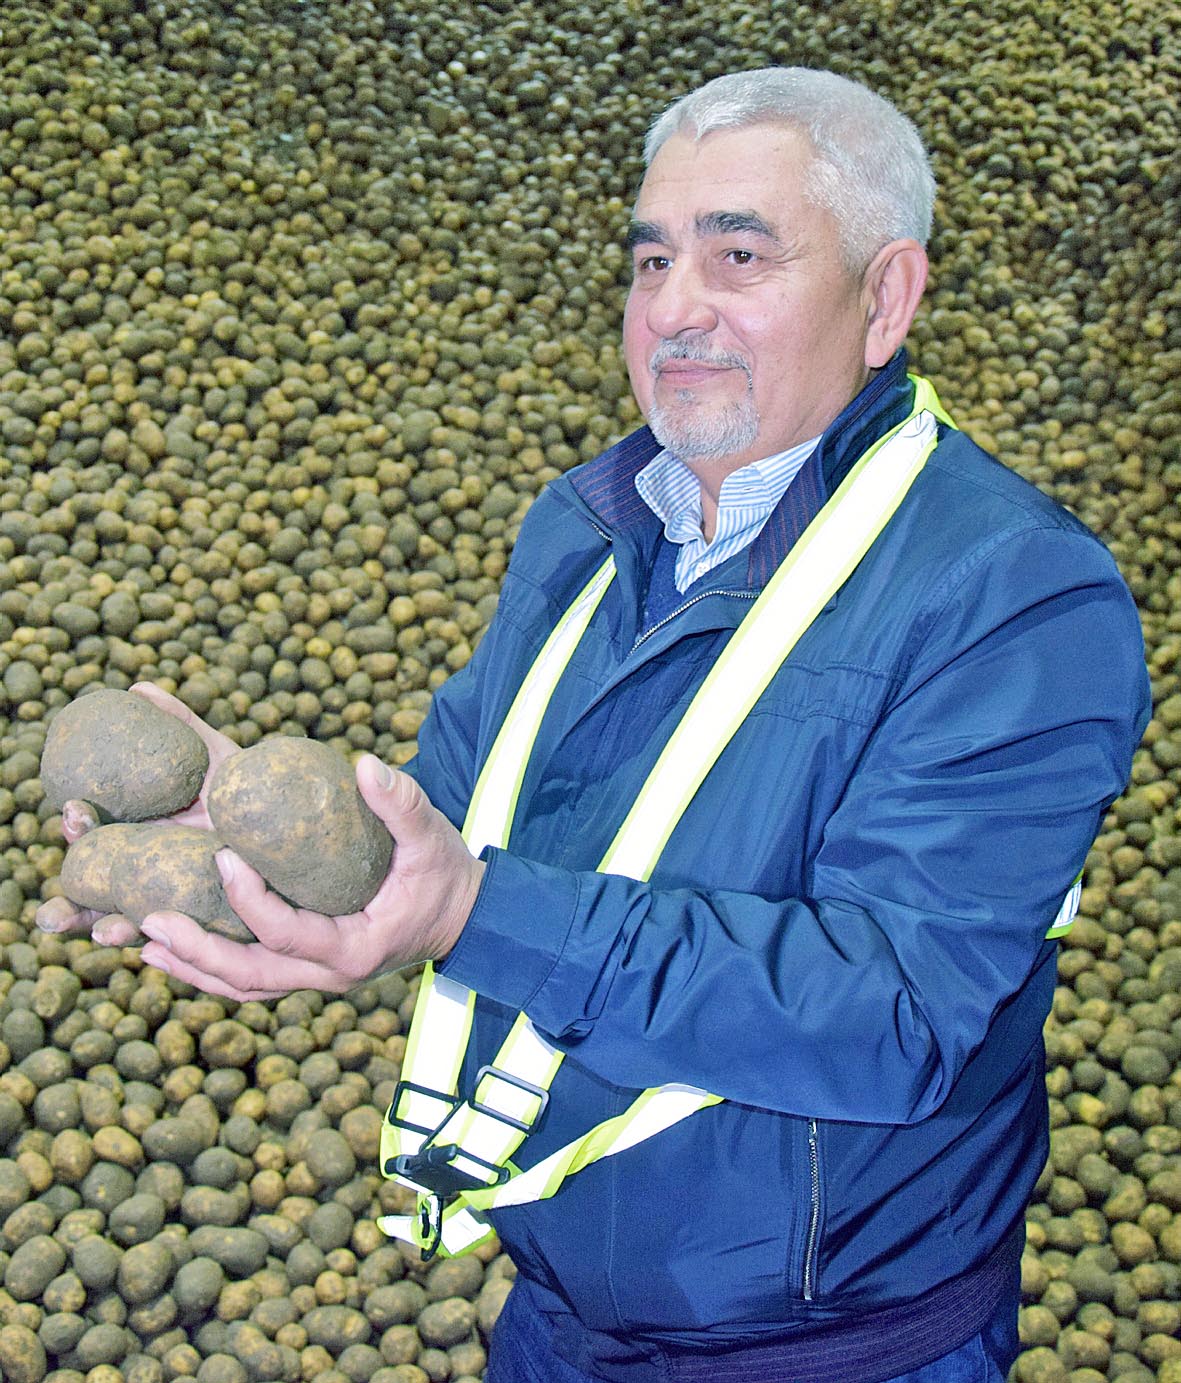 Керівник кластеру «Картопля» «Контінентал Фармерз Груп» Орест Кравчук: «Компанія радіє цьогорічному врожаю картоплі». Фото надав автор